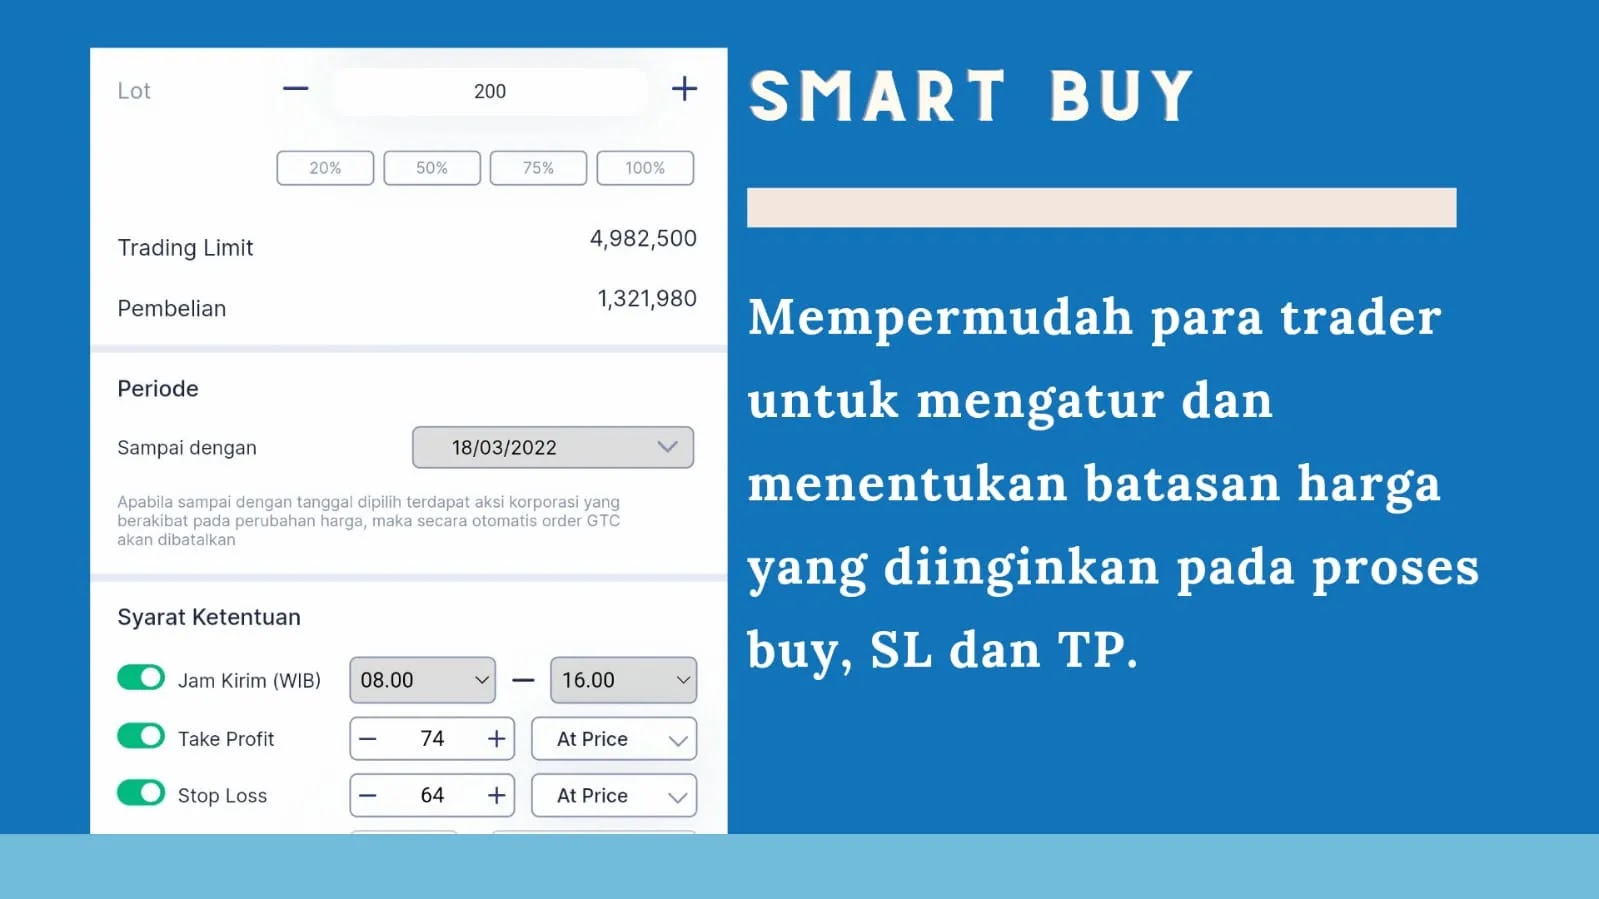 Fitur smart buy dari InvestasiKu